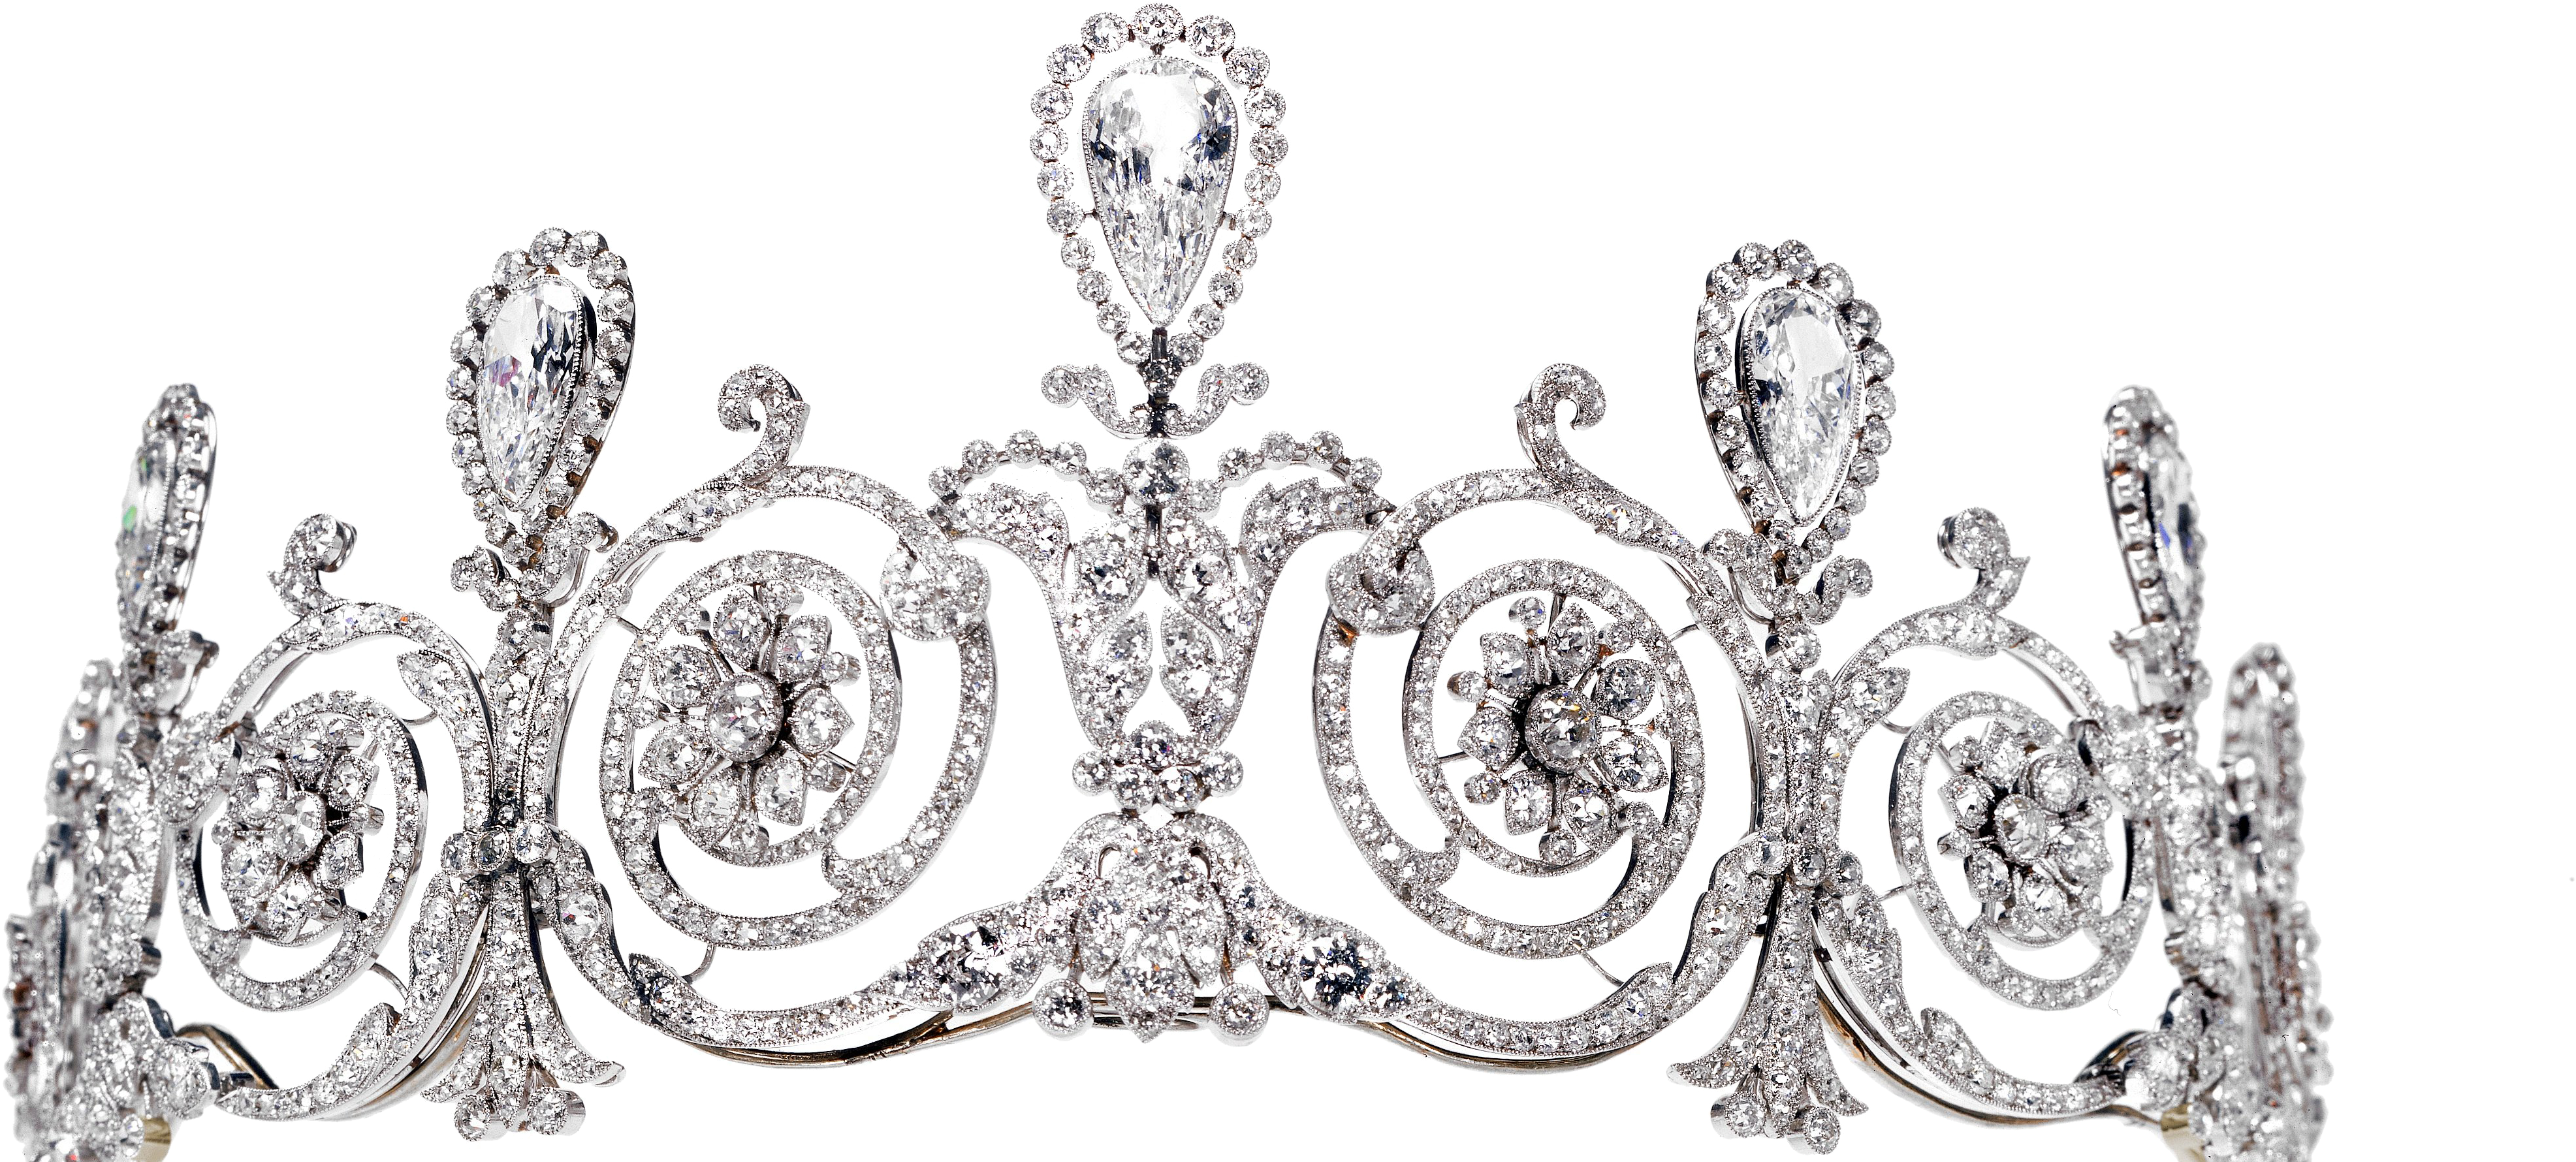 princess crown transparent